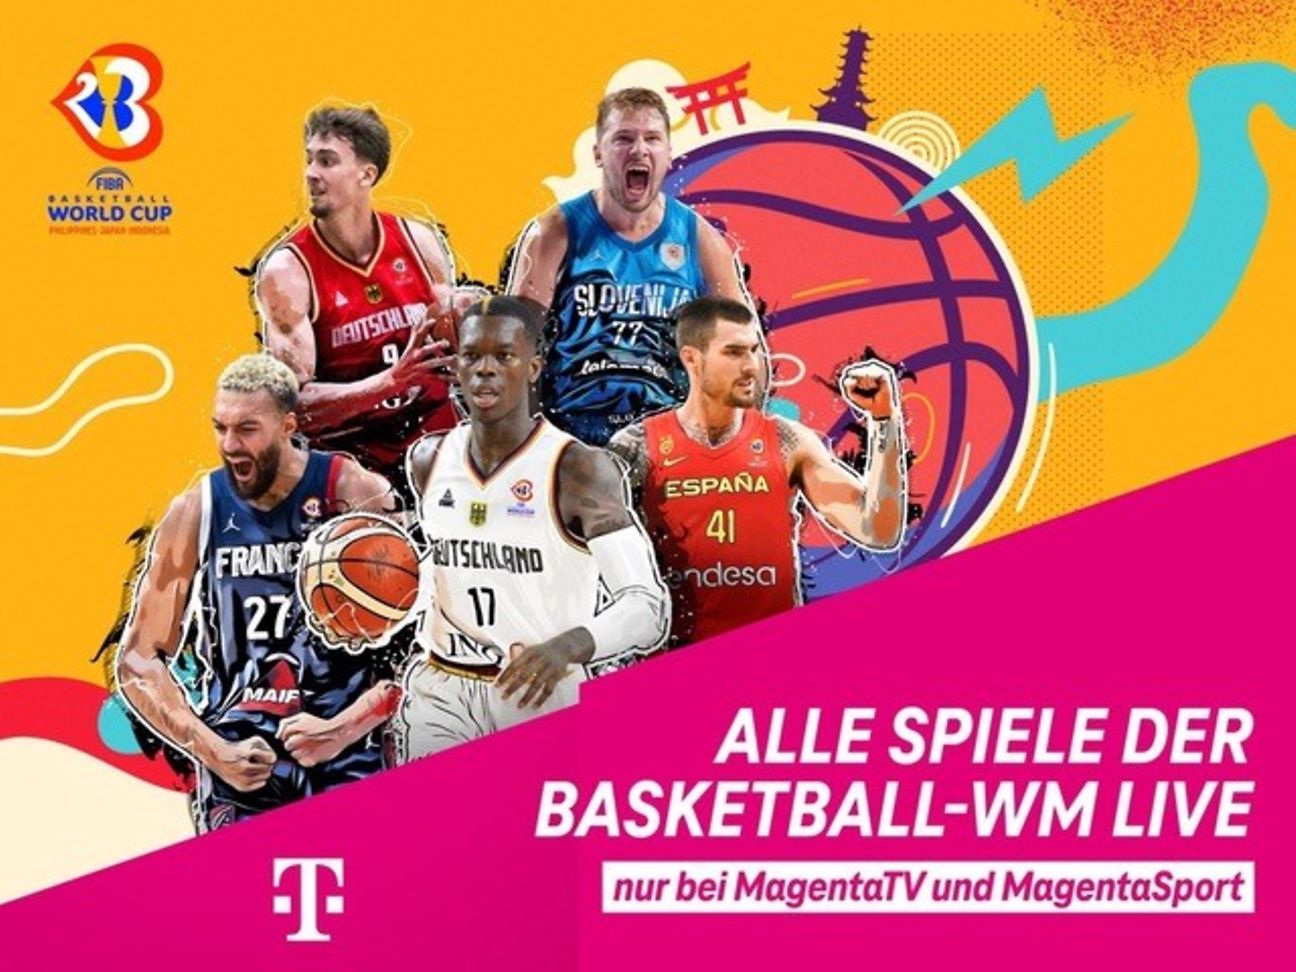 Basketball WM komplett live bei MagentaSport Deutsche Telekom